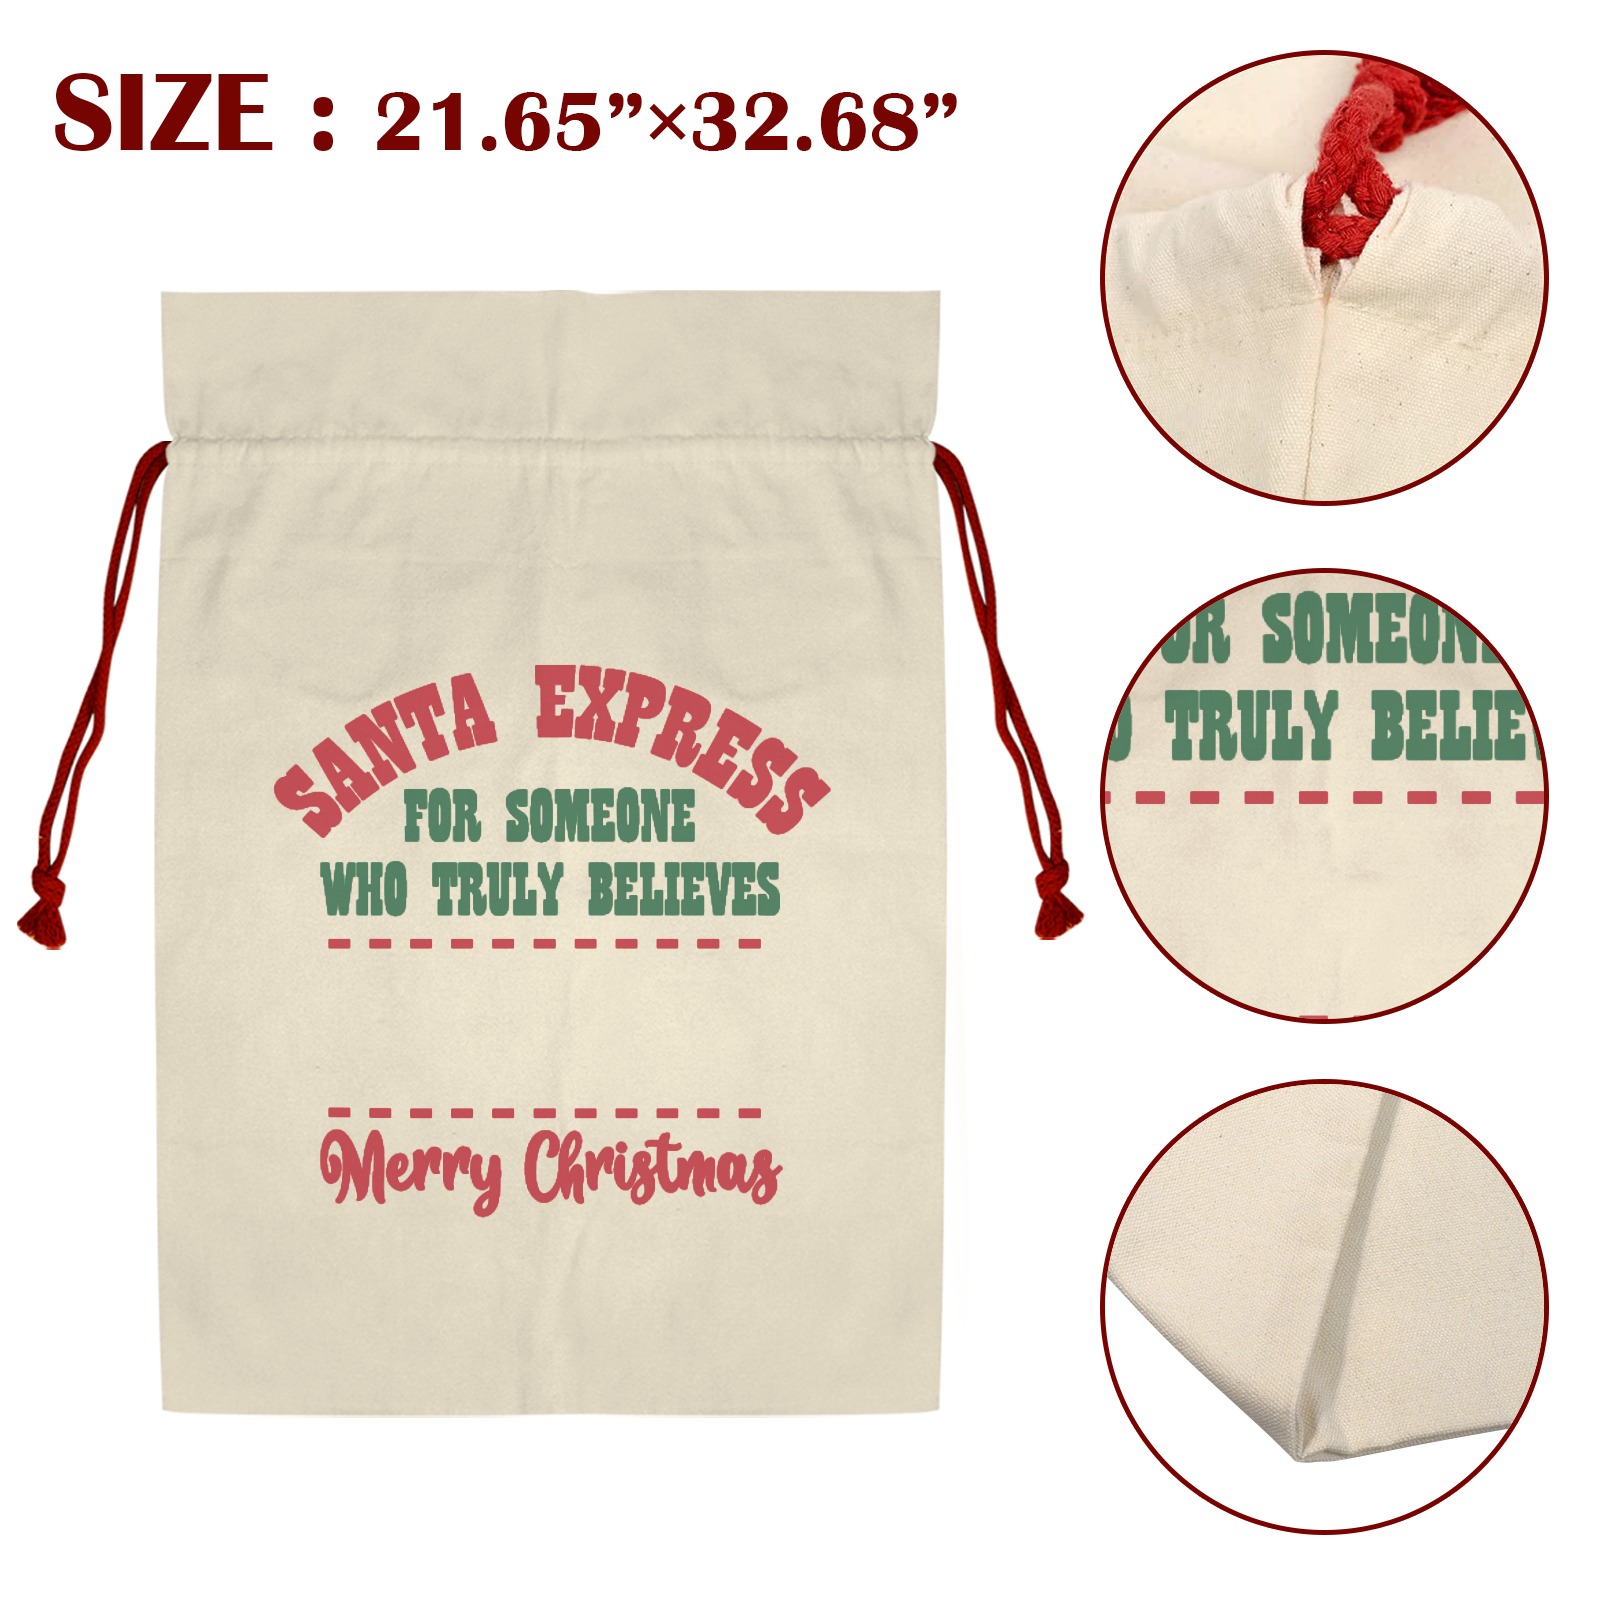 Santa Express Santa Claus Drawstring Bag 21"x32" (Two Sides Printing)